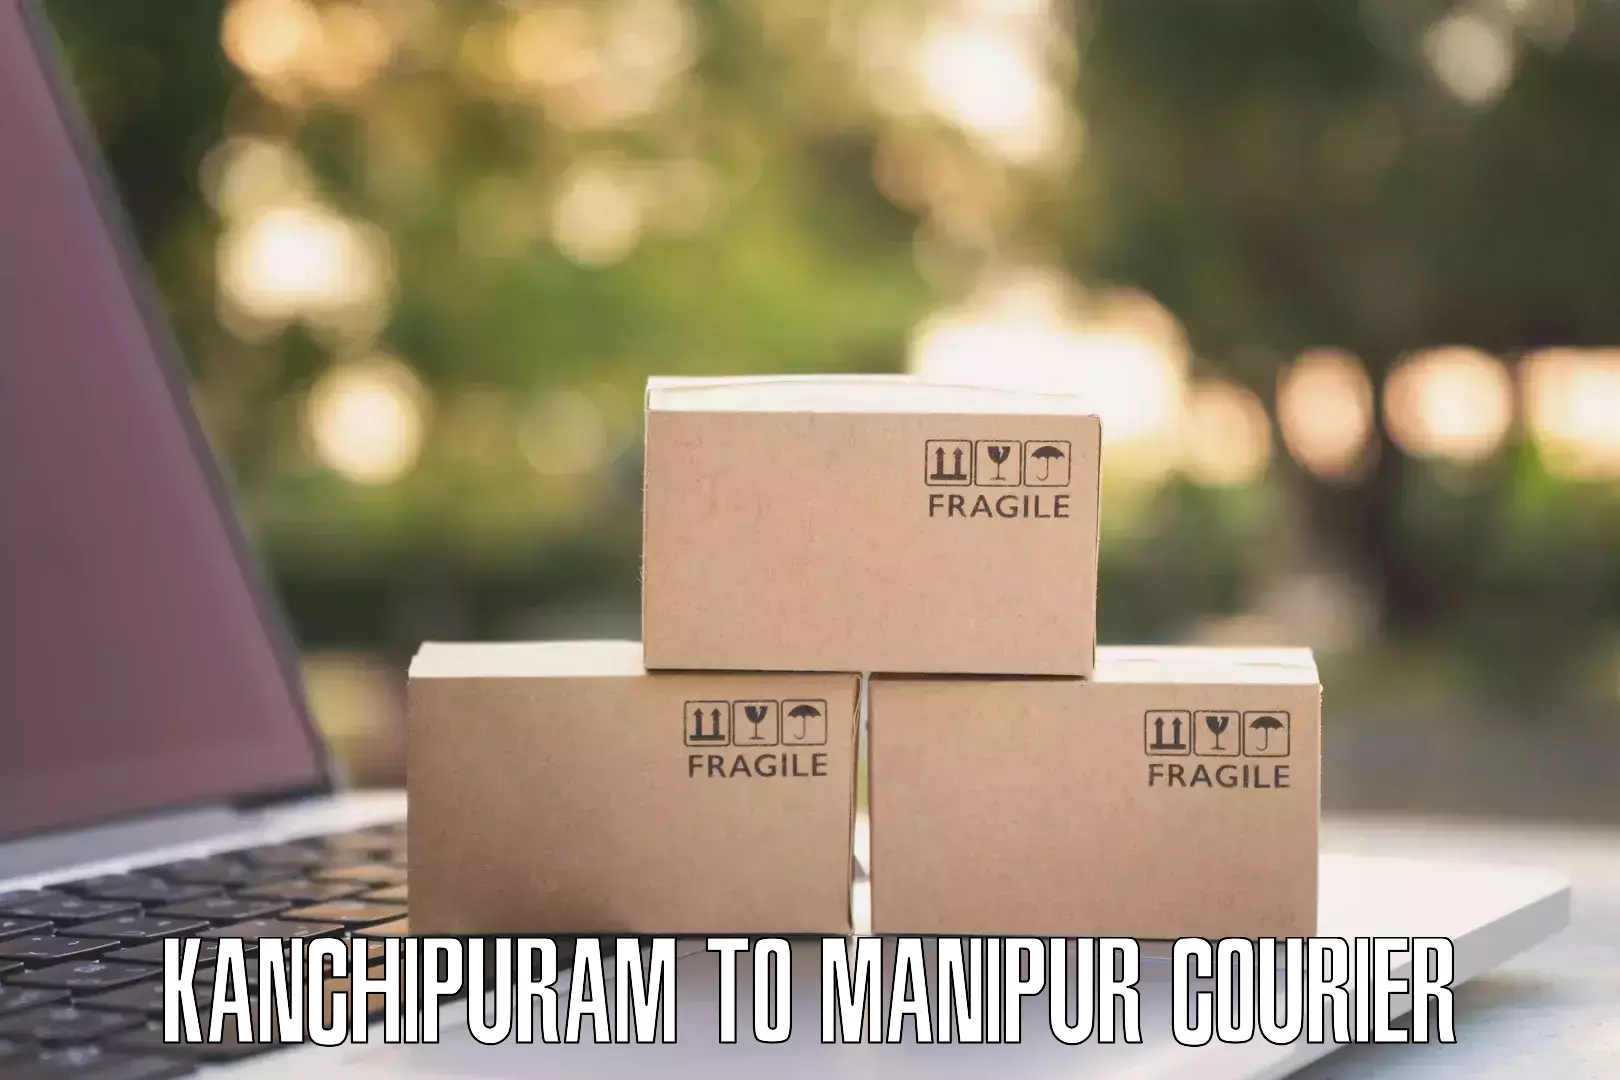 Efficient cargo services Kanchipuram to Churachandpur